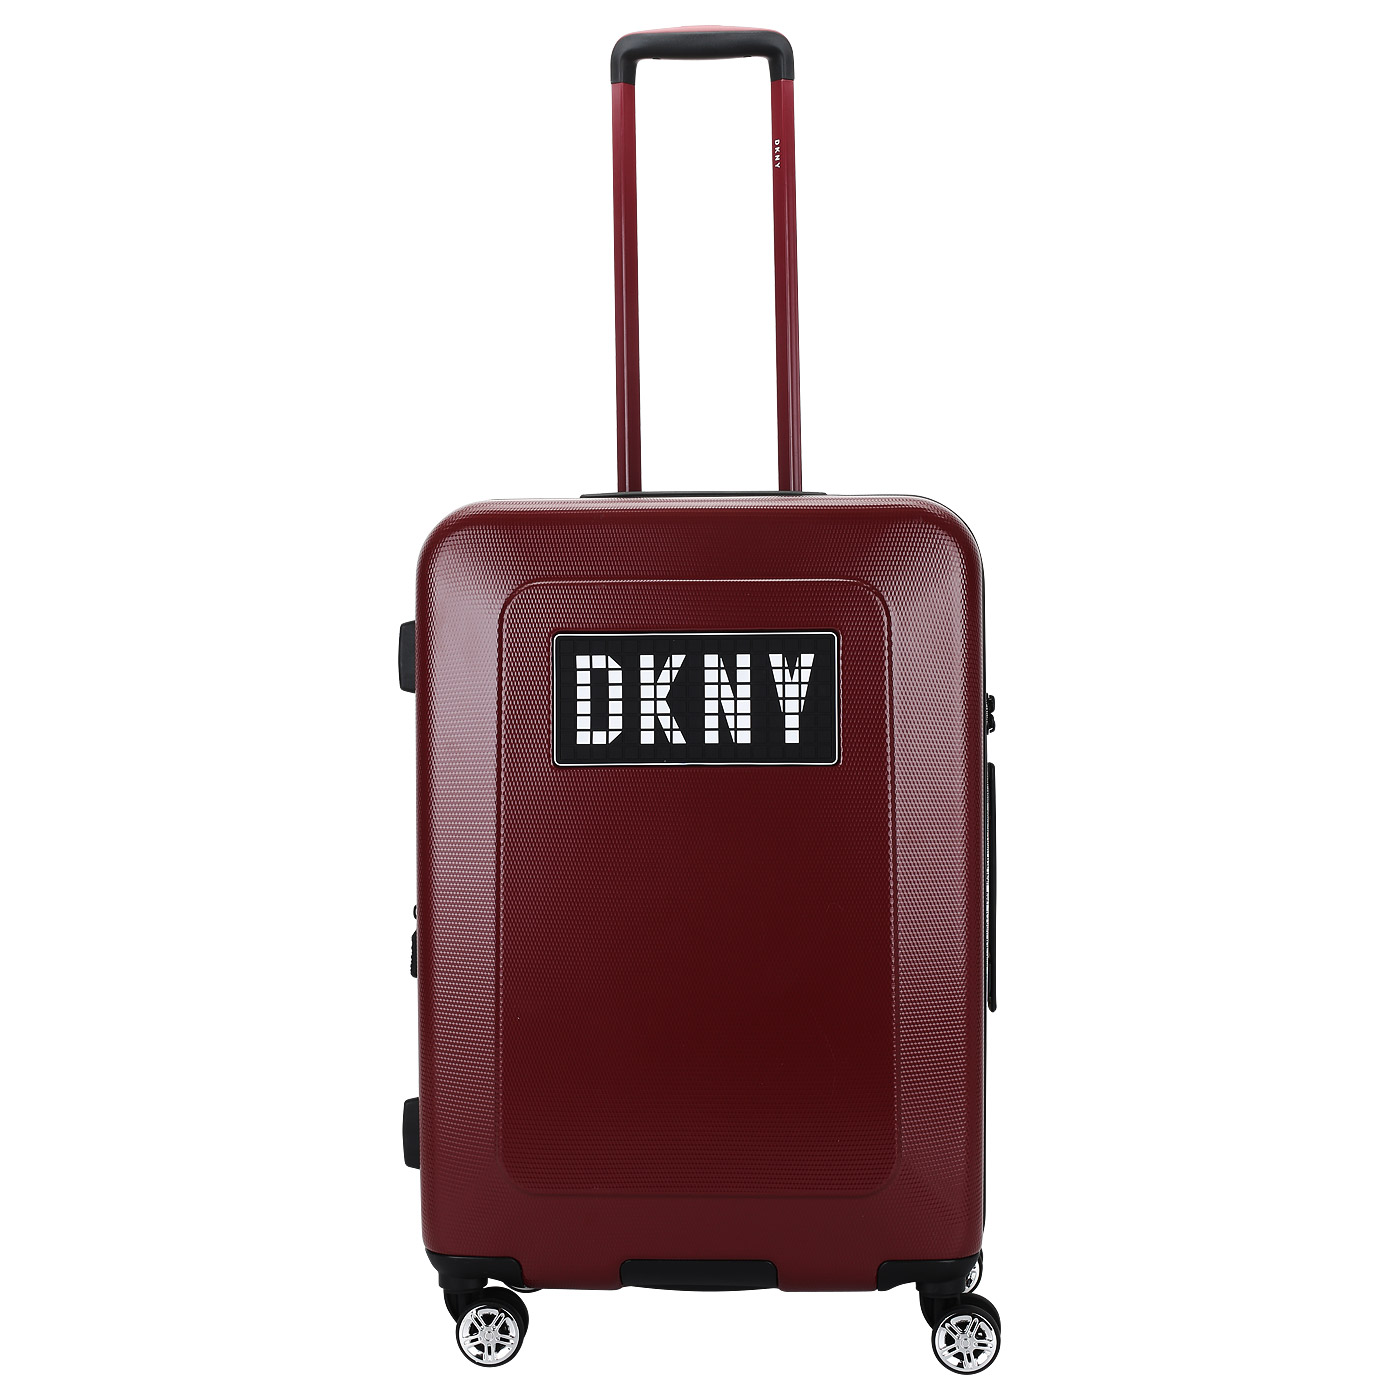 Чемодан средний M из ABS-пластика с кодовым замком DKNY DKNY-312 Unlimited